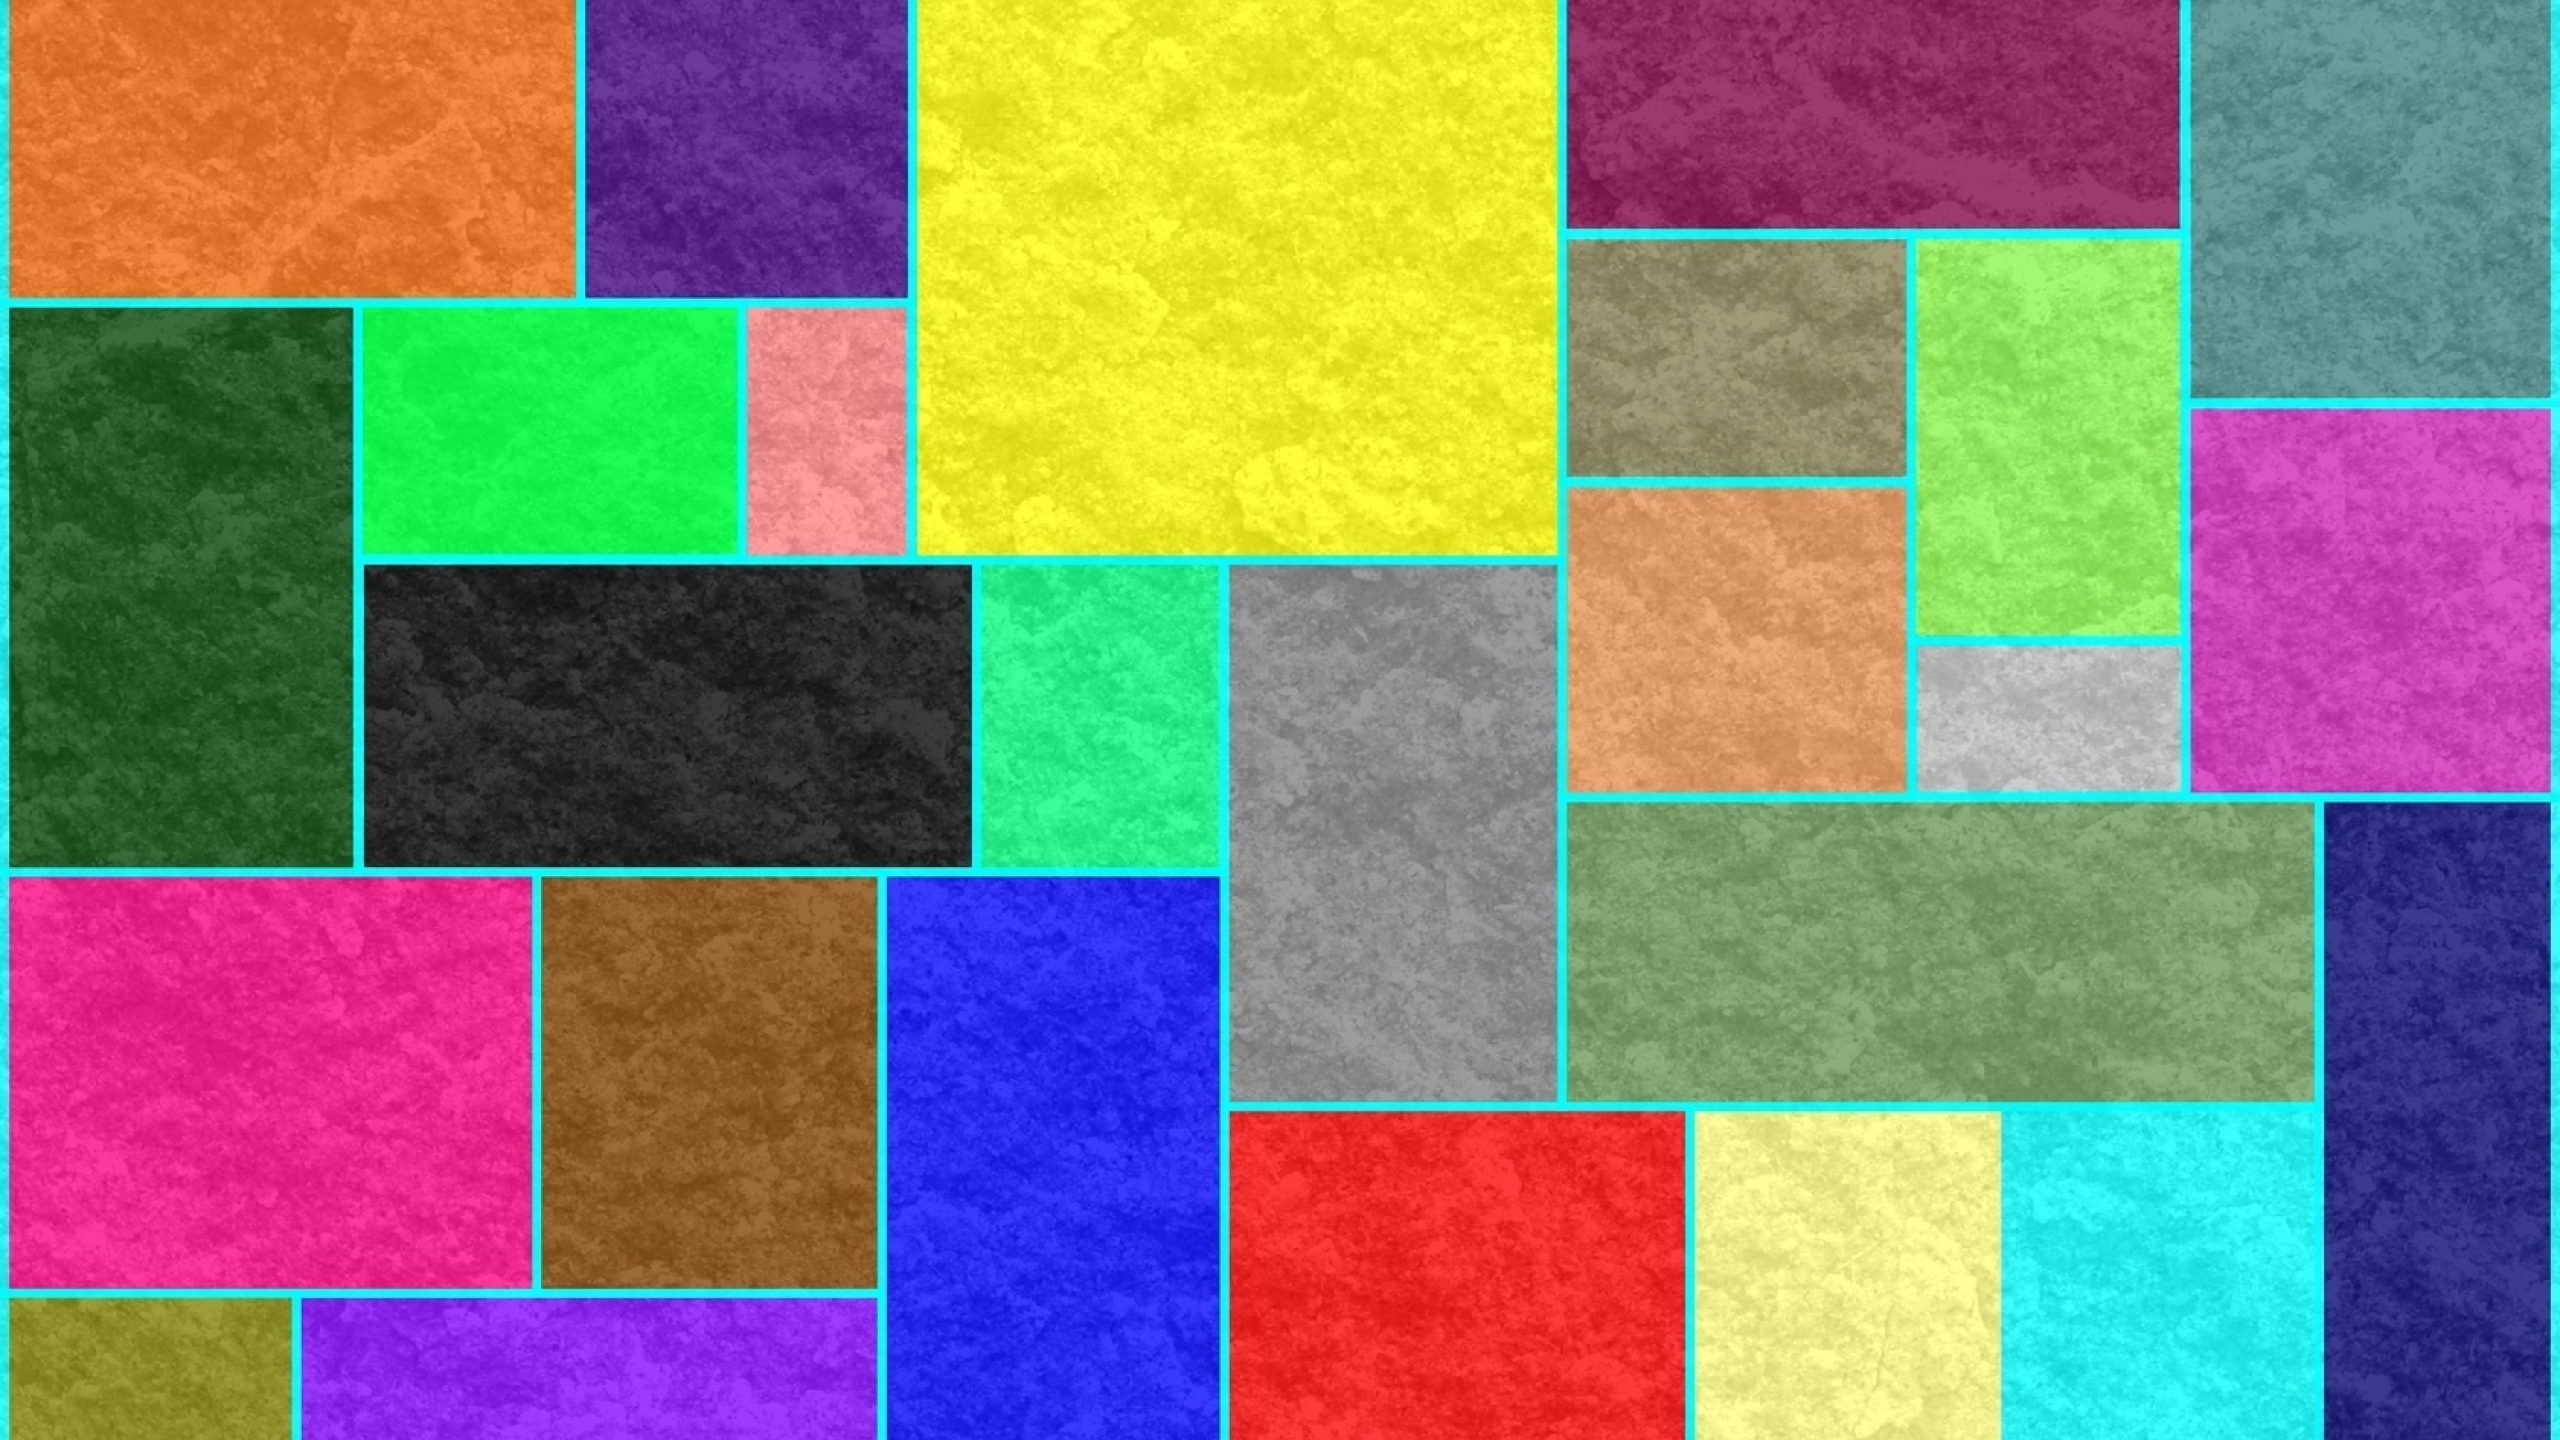 Kotak Kotak Warna Warni - HD Wallpaper 